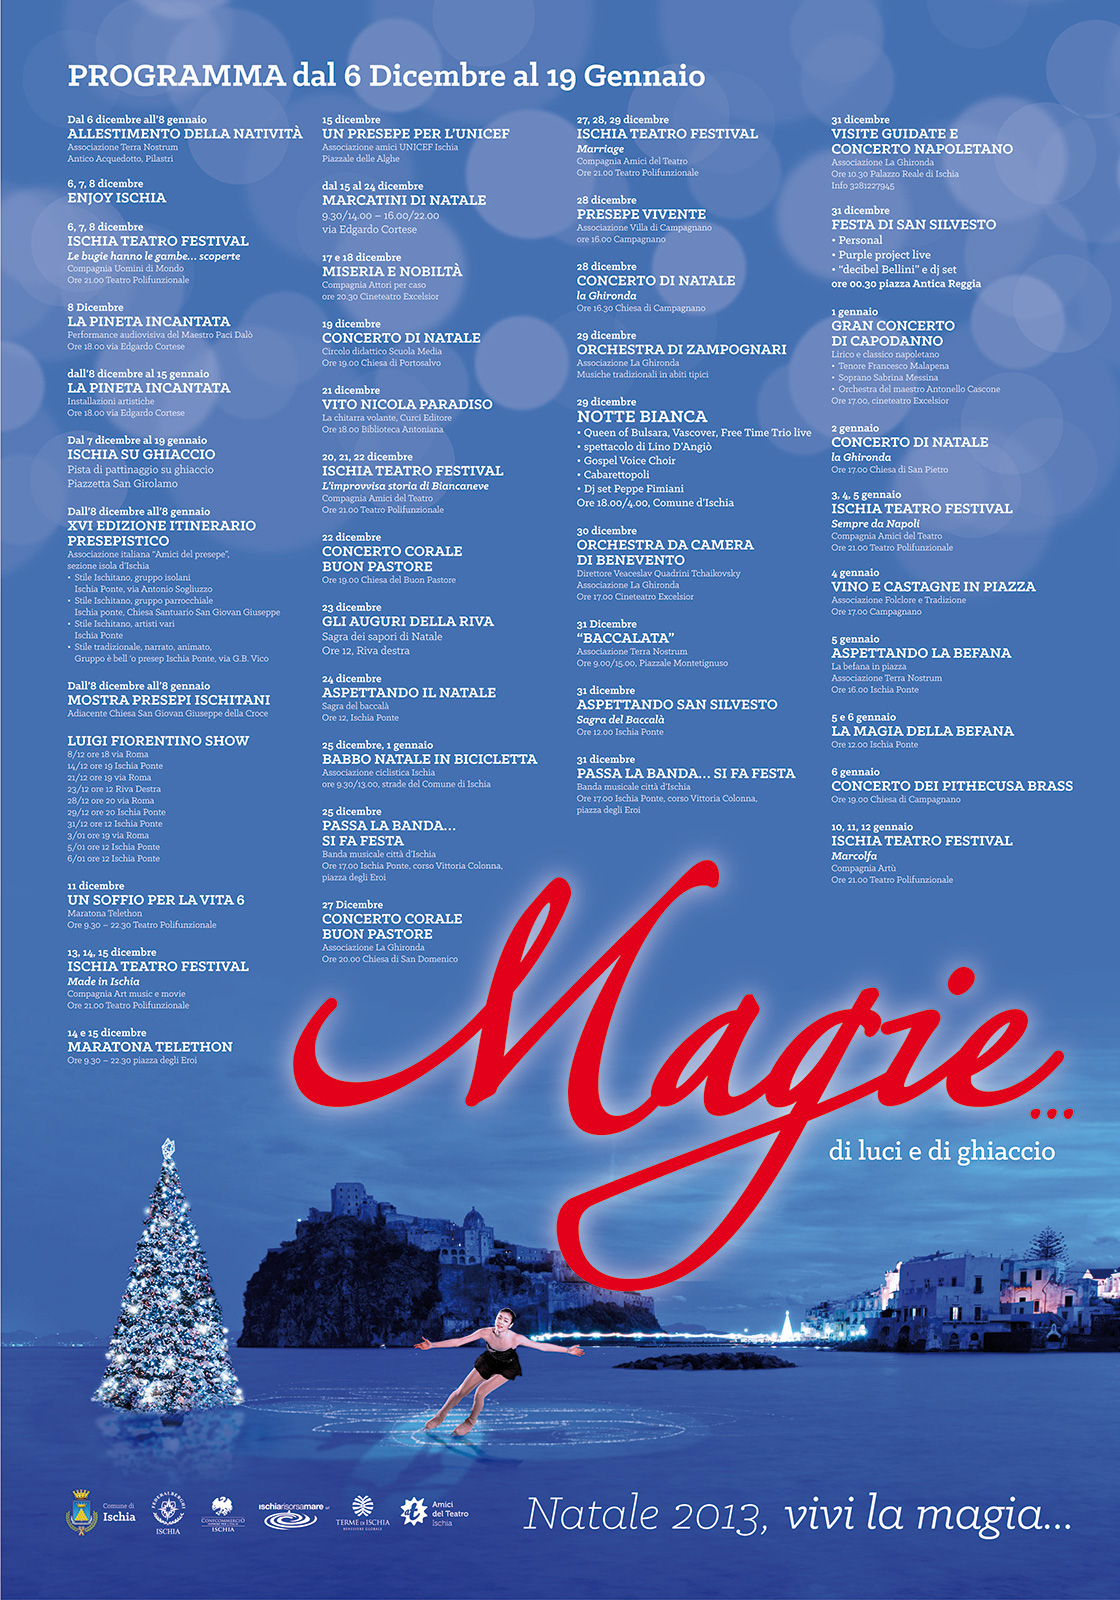 Programma di Natale 2013 del Comune di Ischia, eventi